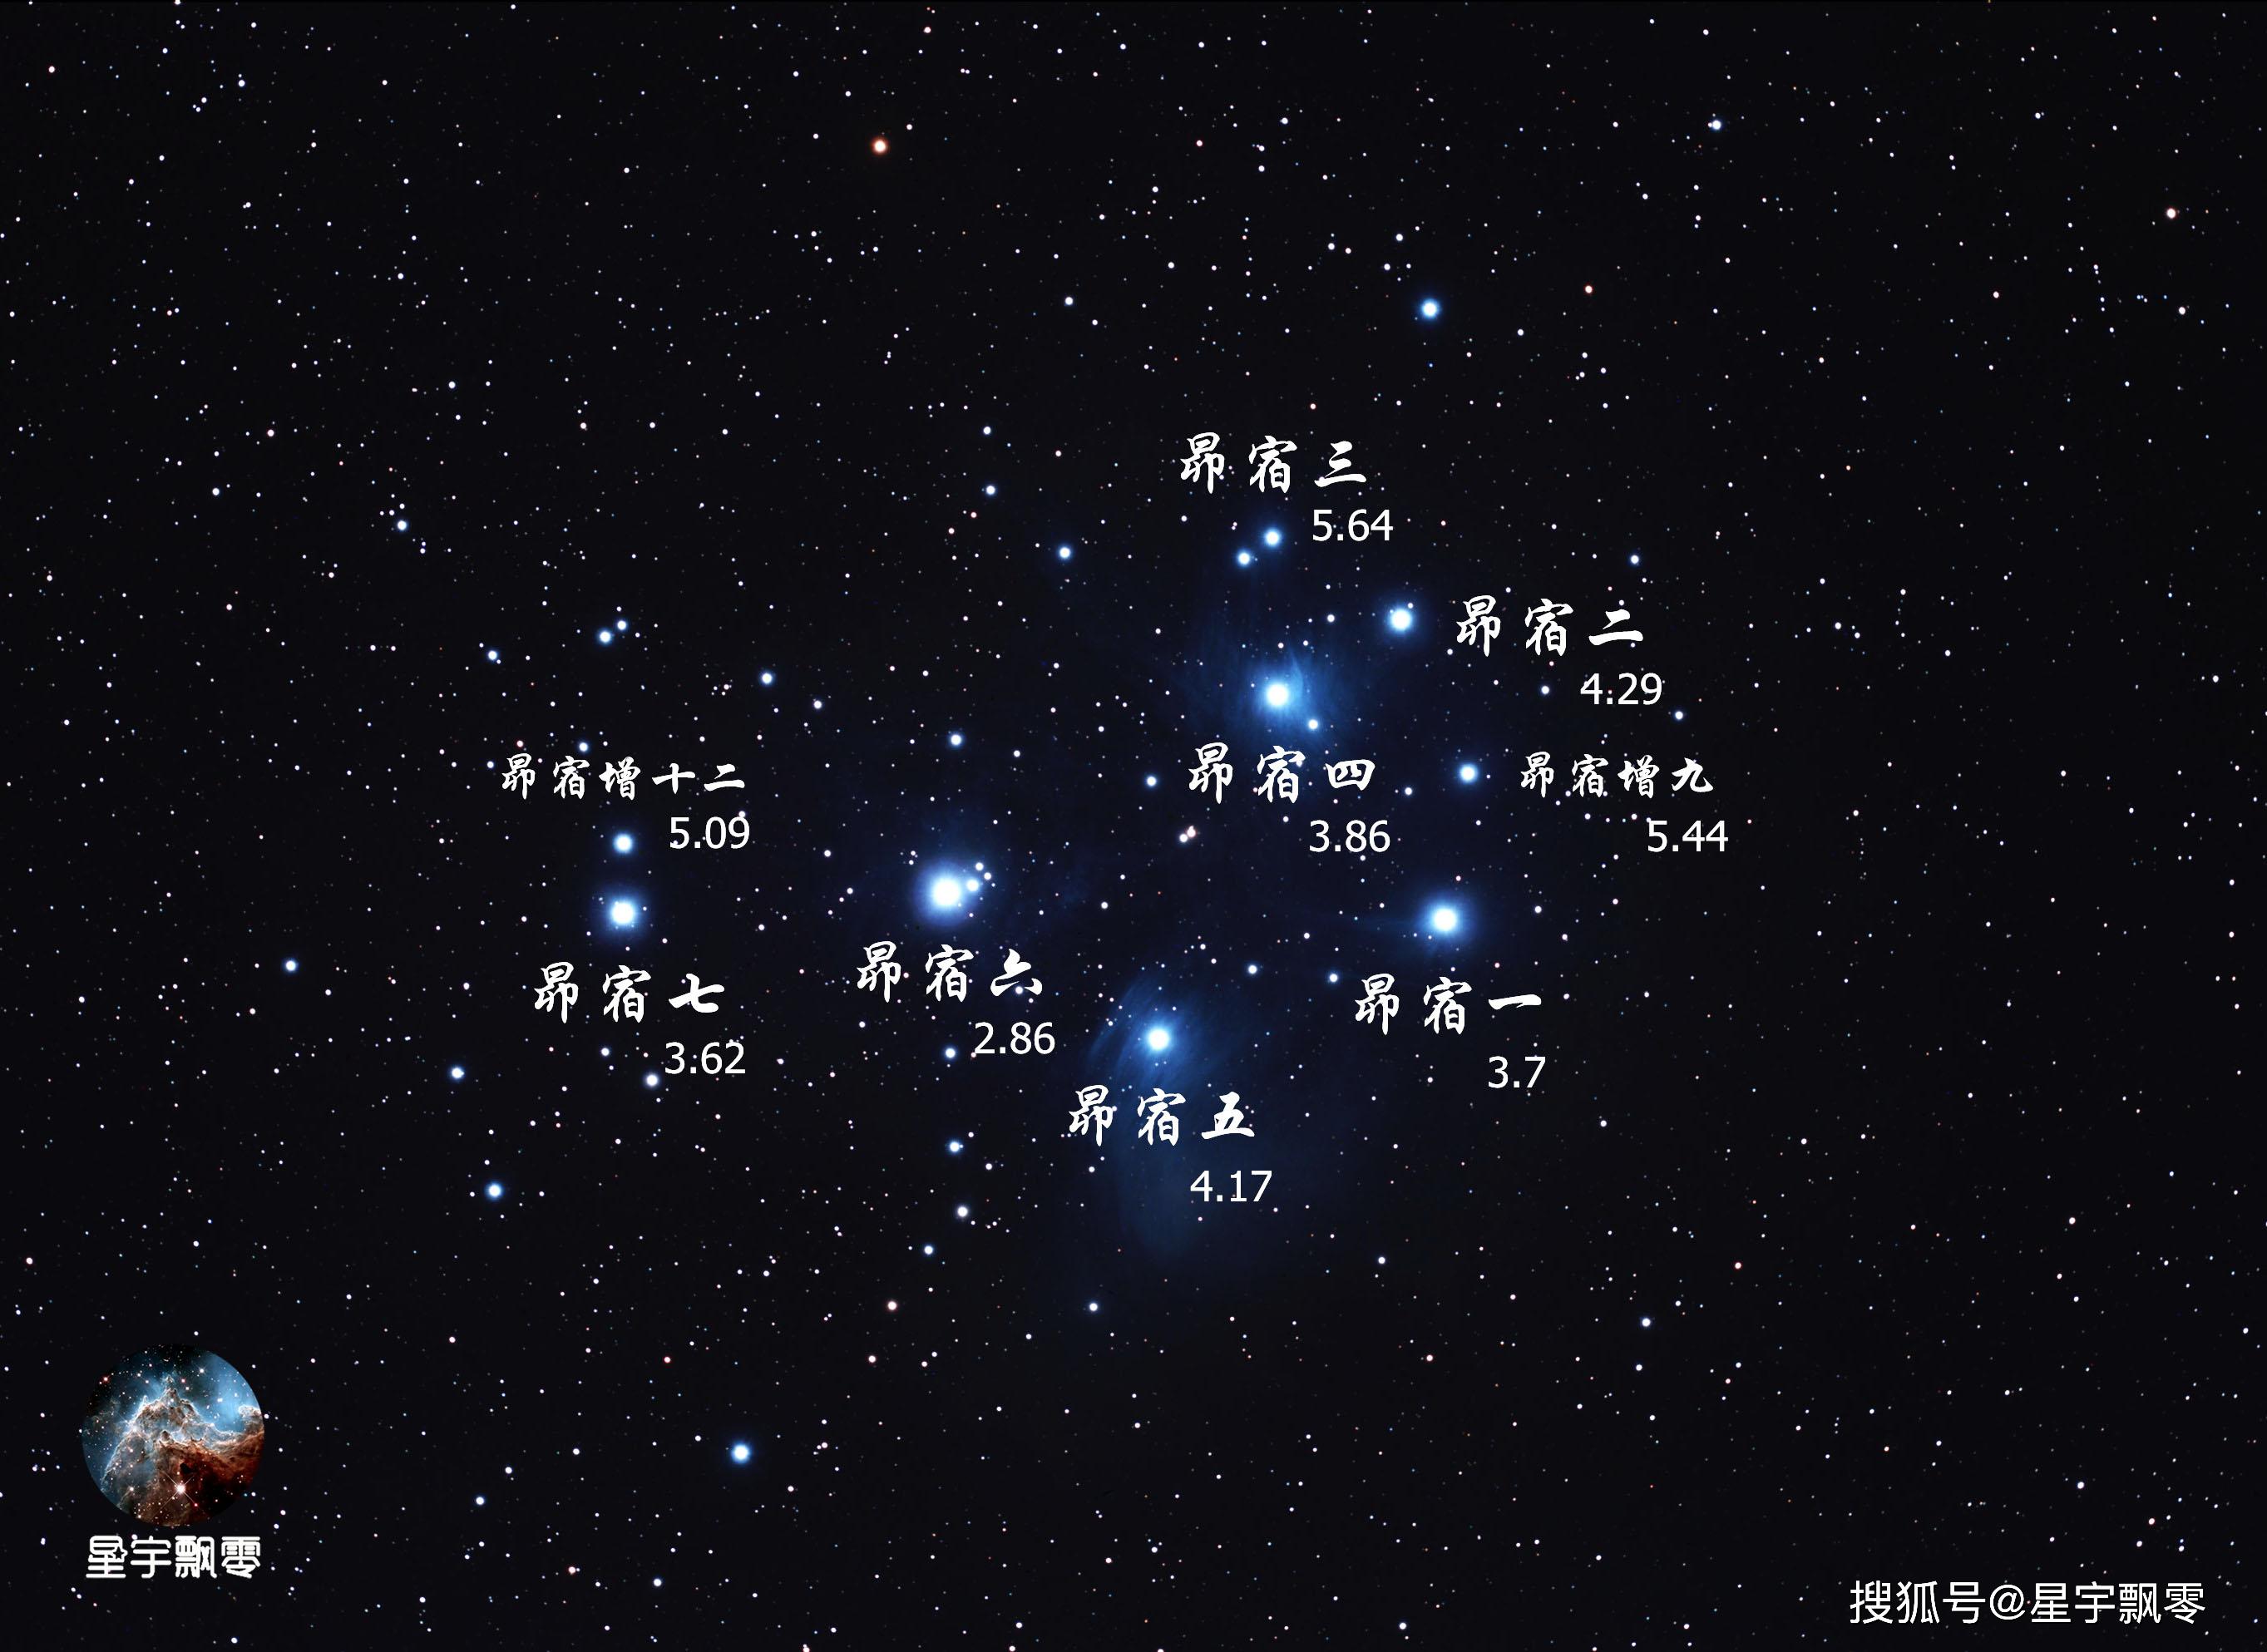 斯巴鲁 昴星团图片